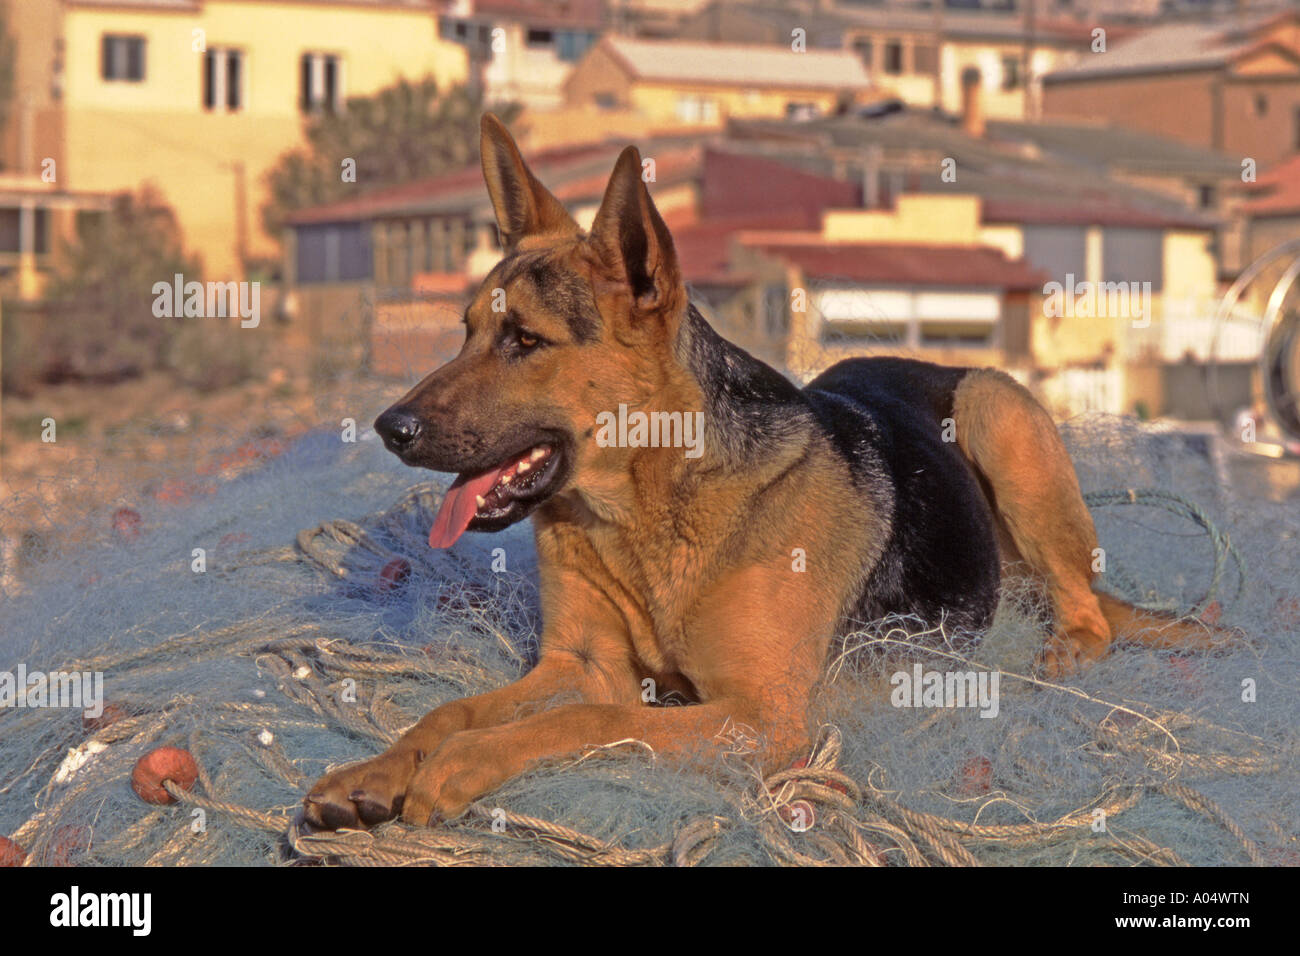 Pastore Tedesco cane, alsaziano (Canis lupus familiaris) giacente su una rete da pesca Foto Stock